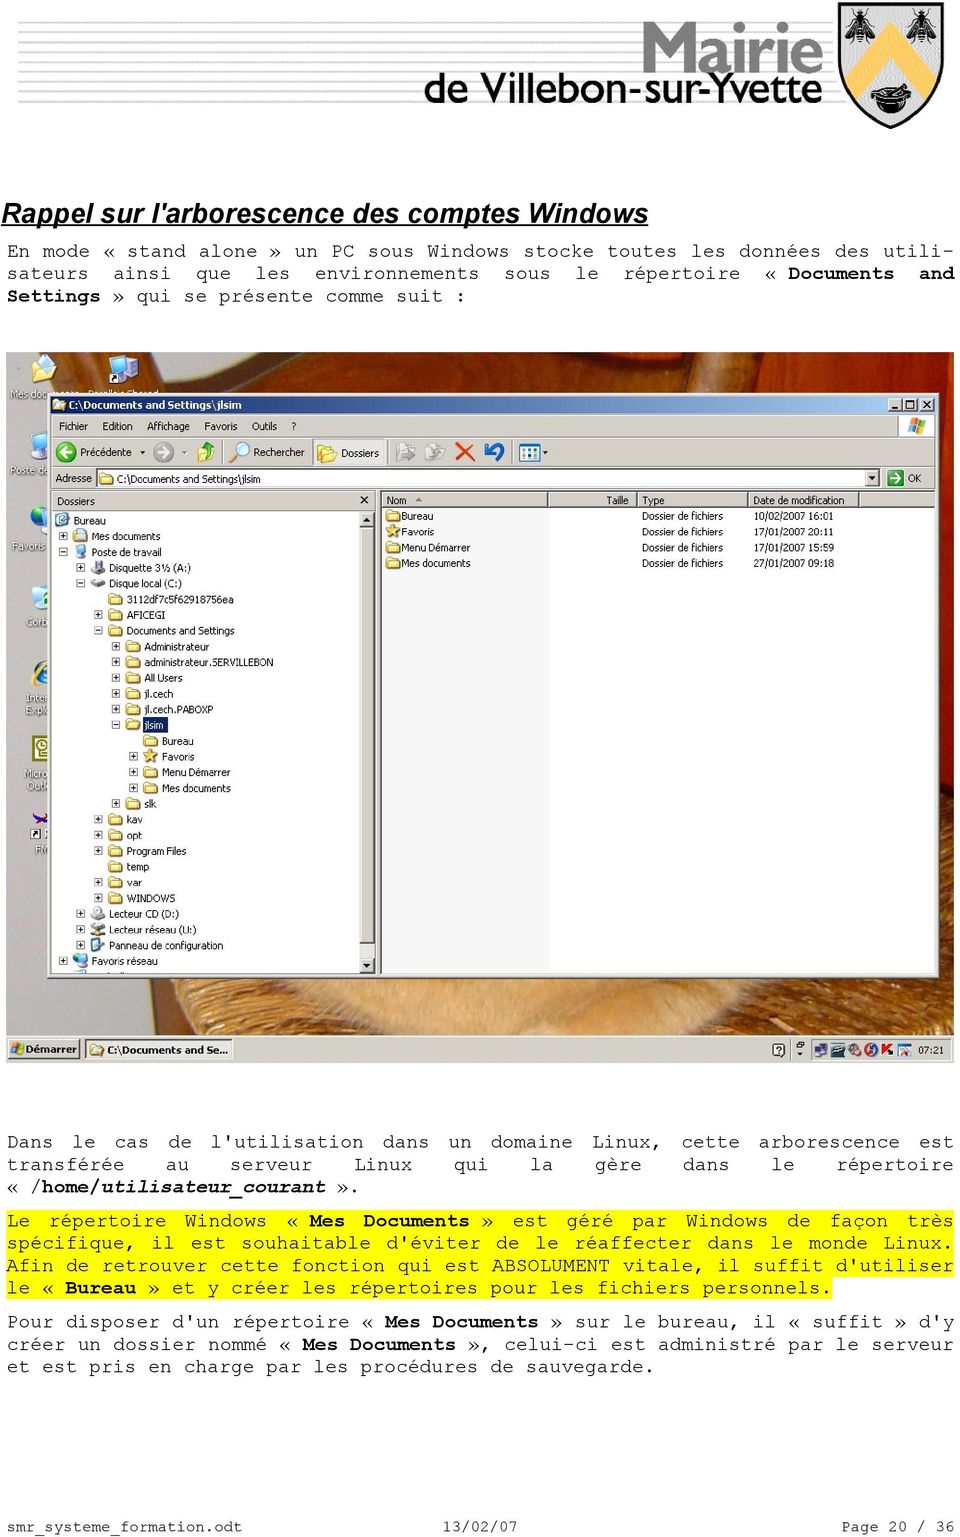 «/home/utilisateur_courant». Le répertoire Windows «Mes Documents» est géré par Windows de façon très spécique, il est souhaitable d'éviter de le réaffecter dans le monde Linux.